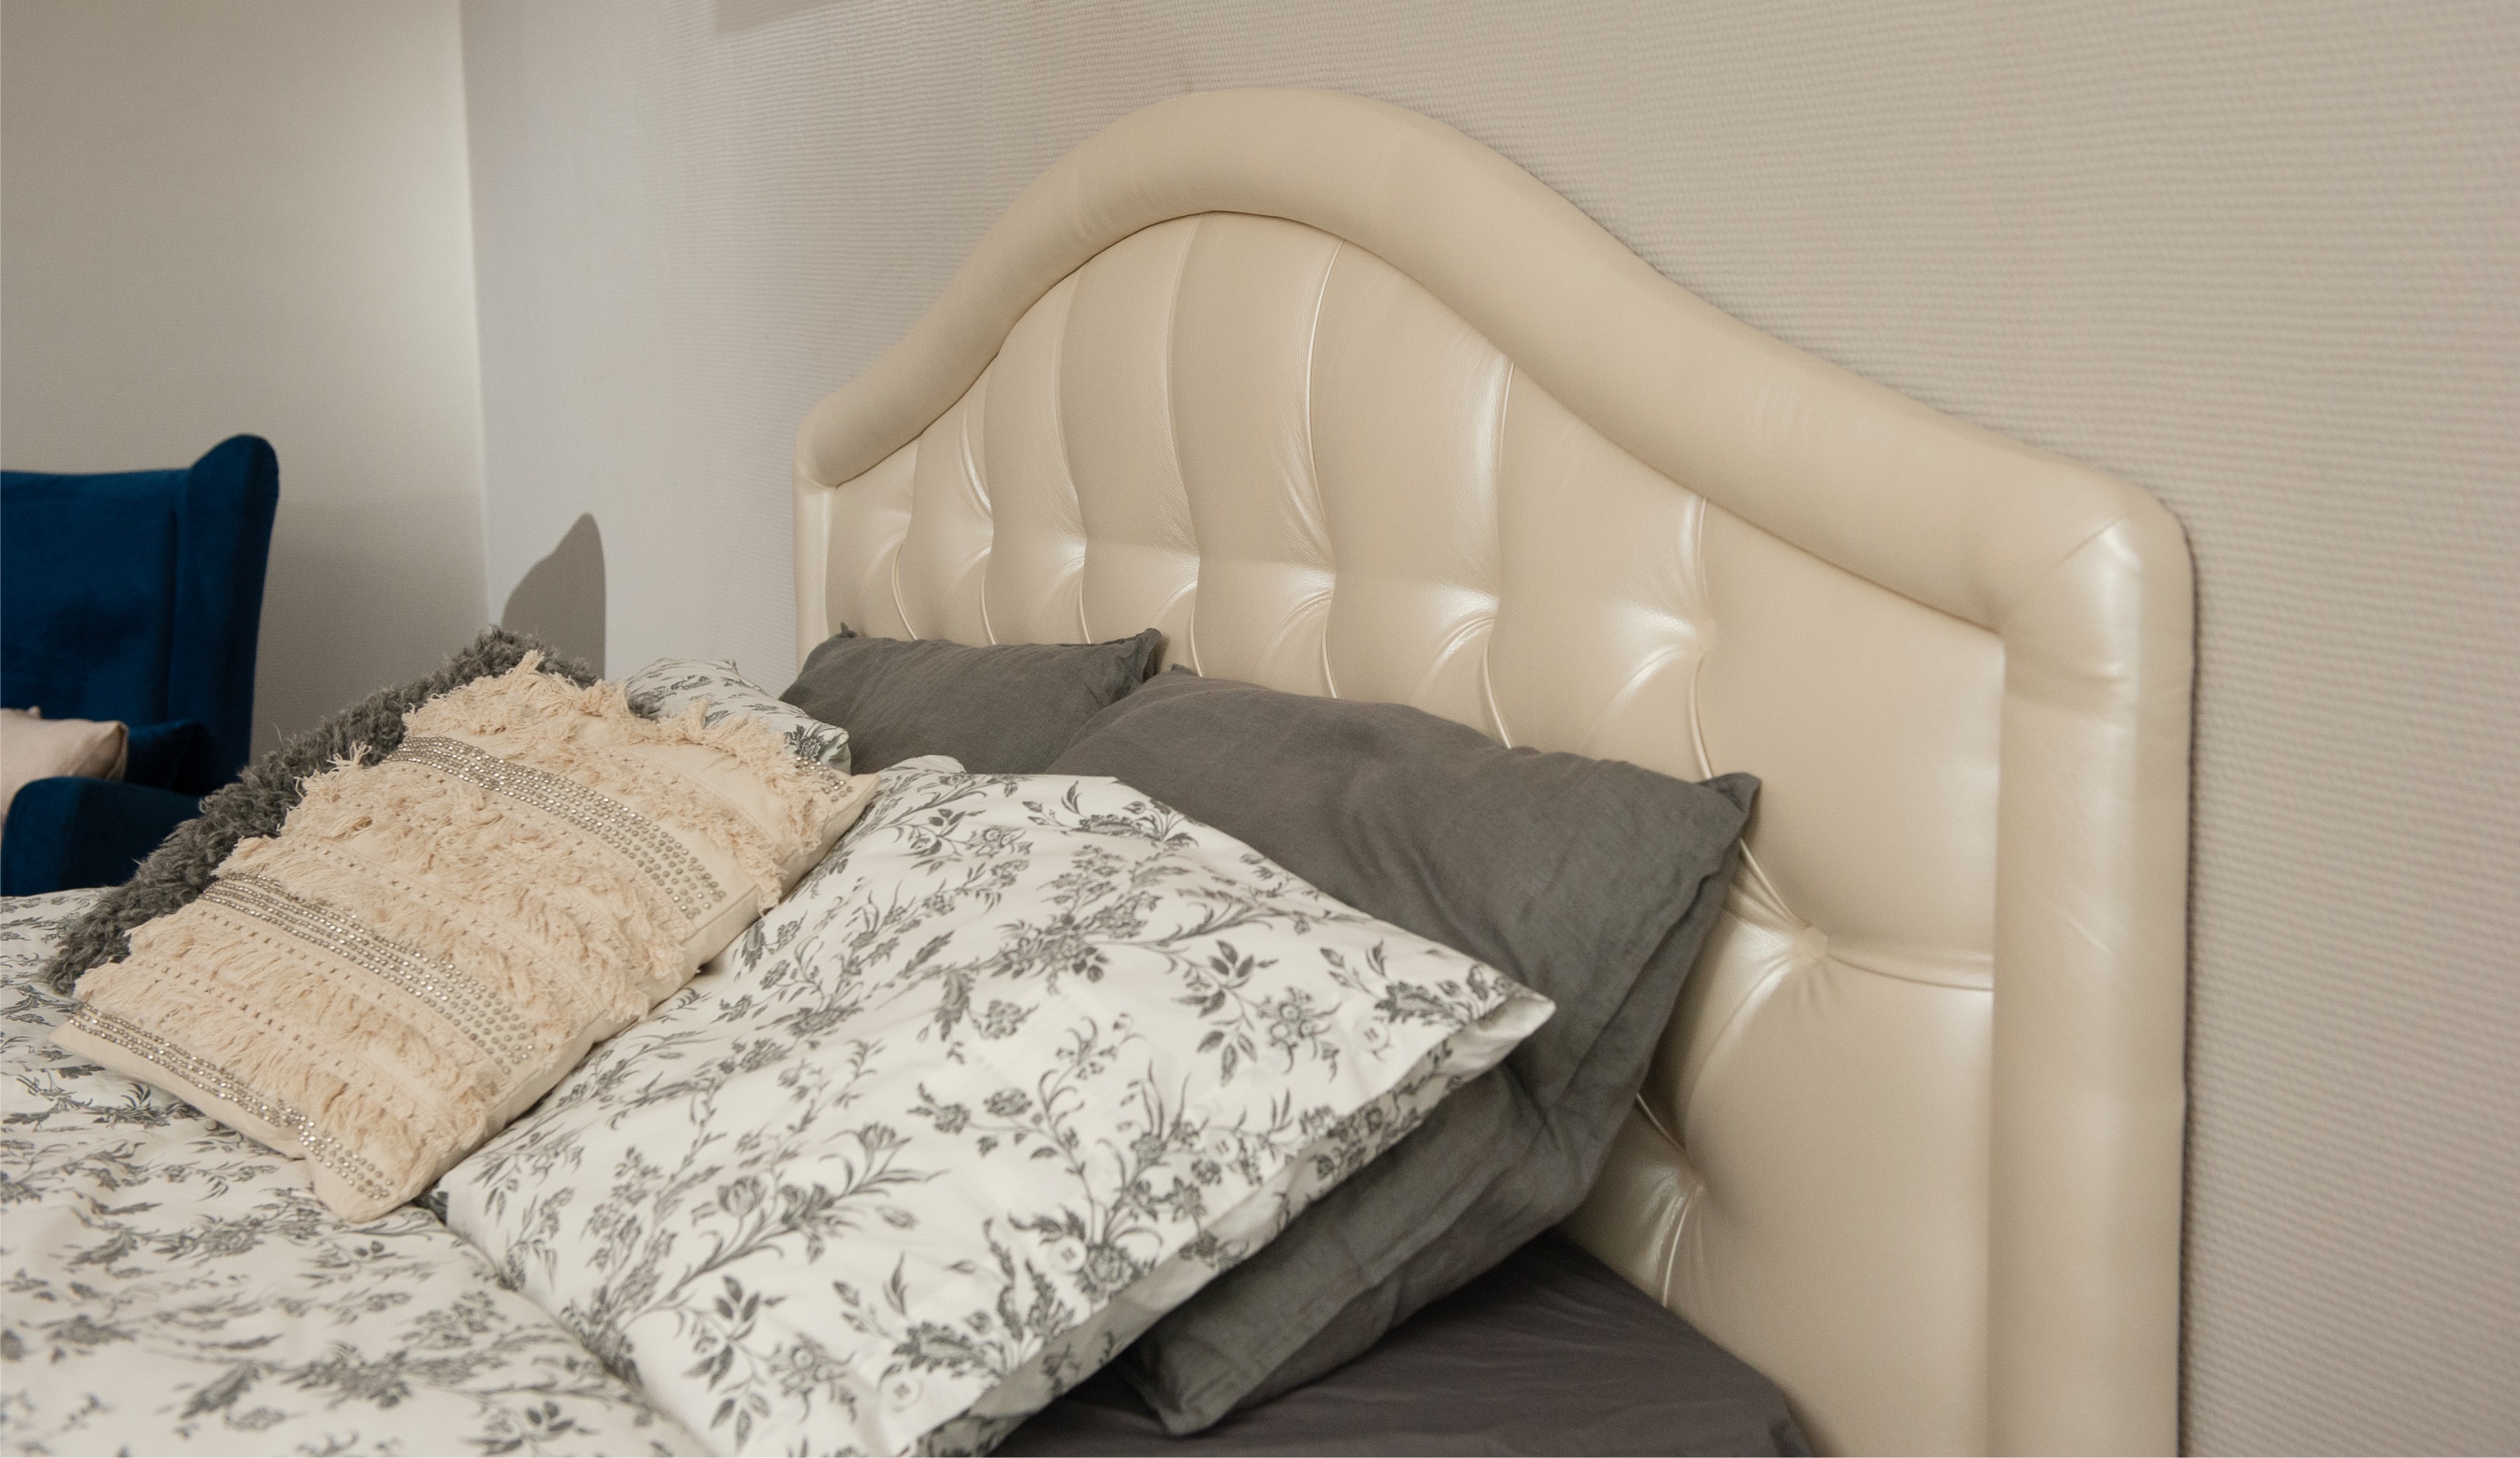 Мягкая кровать Элизабет 140, цвет pearl shell с пуговицами (подъемник) - фото 10